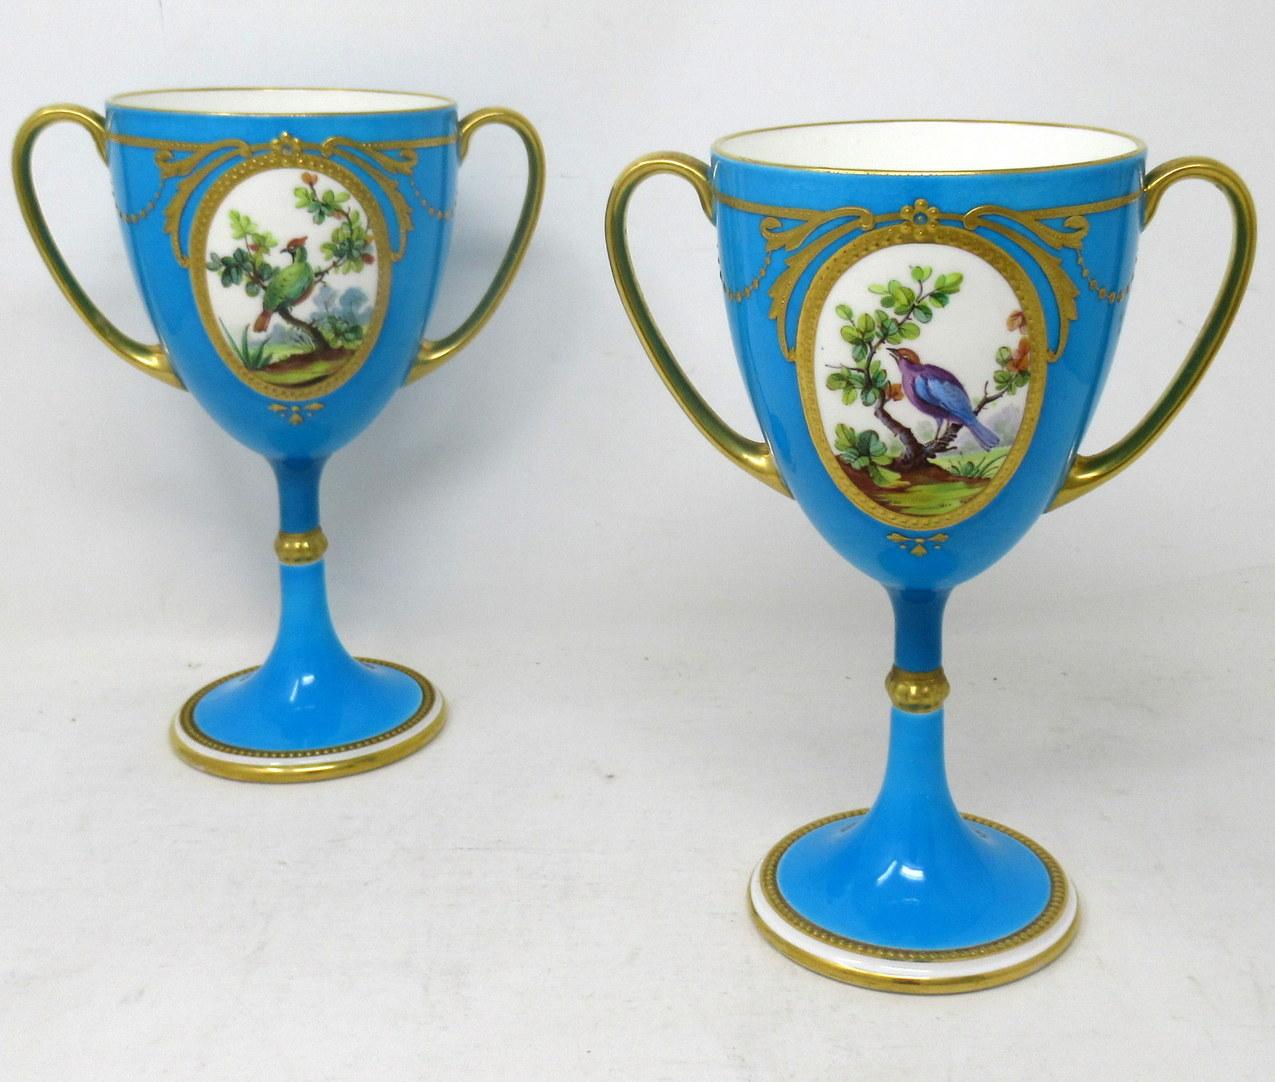 Superbe exemple d'une paire de tasses ou de vases en porcelaine Minton à longue tige et à double anse, de qualité exceptionnelle, fermement attribuée à l'artiste James Edwin Dean (1863-1935). 

Chaque réserve centrale ovale est délicieusement